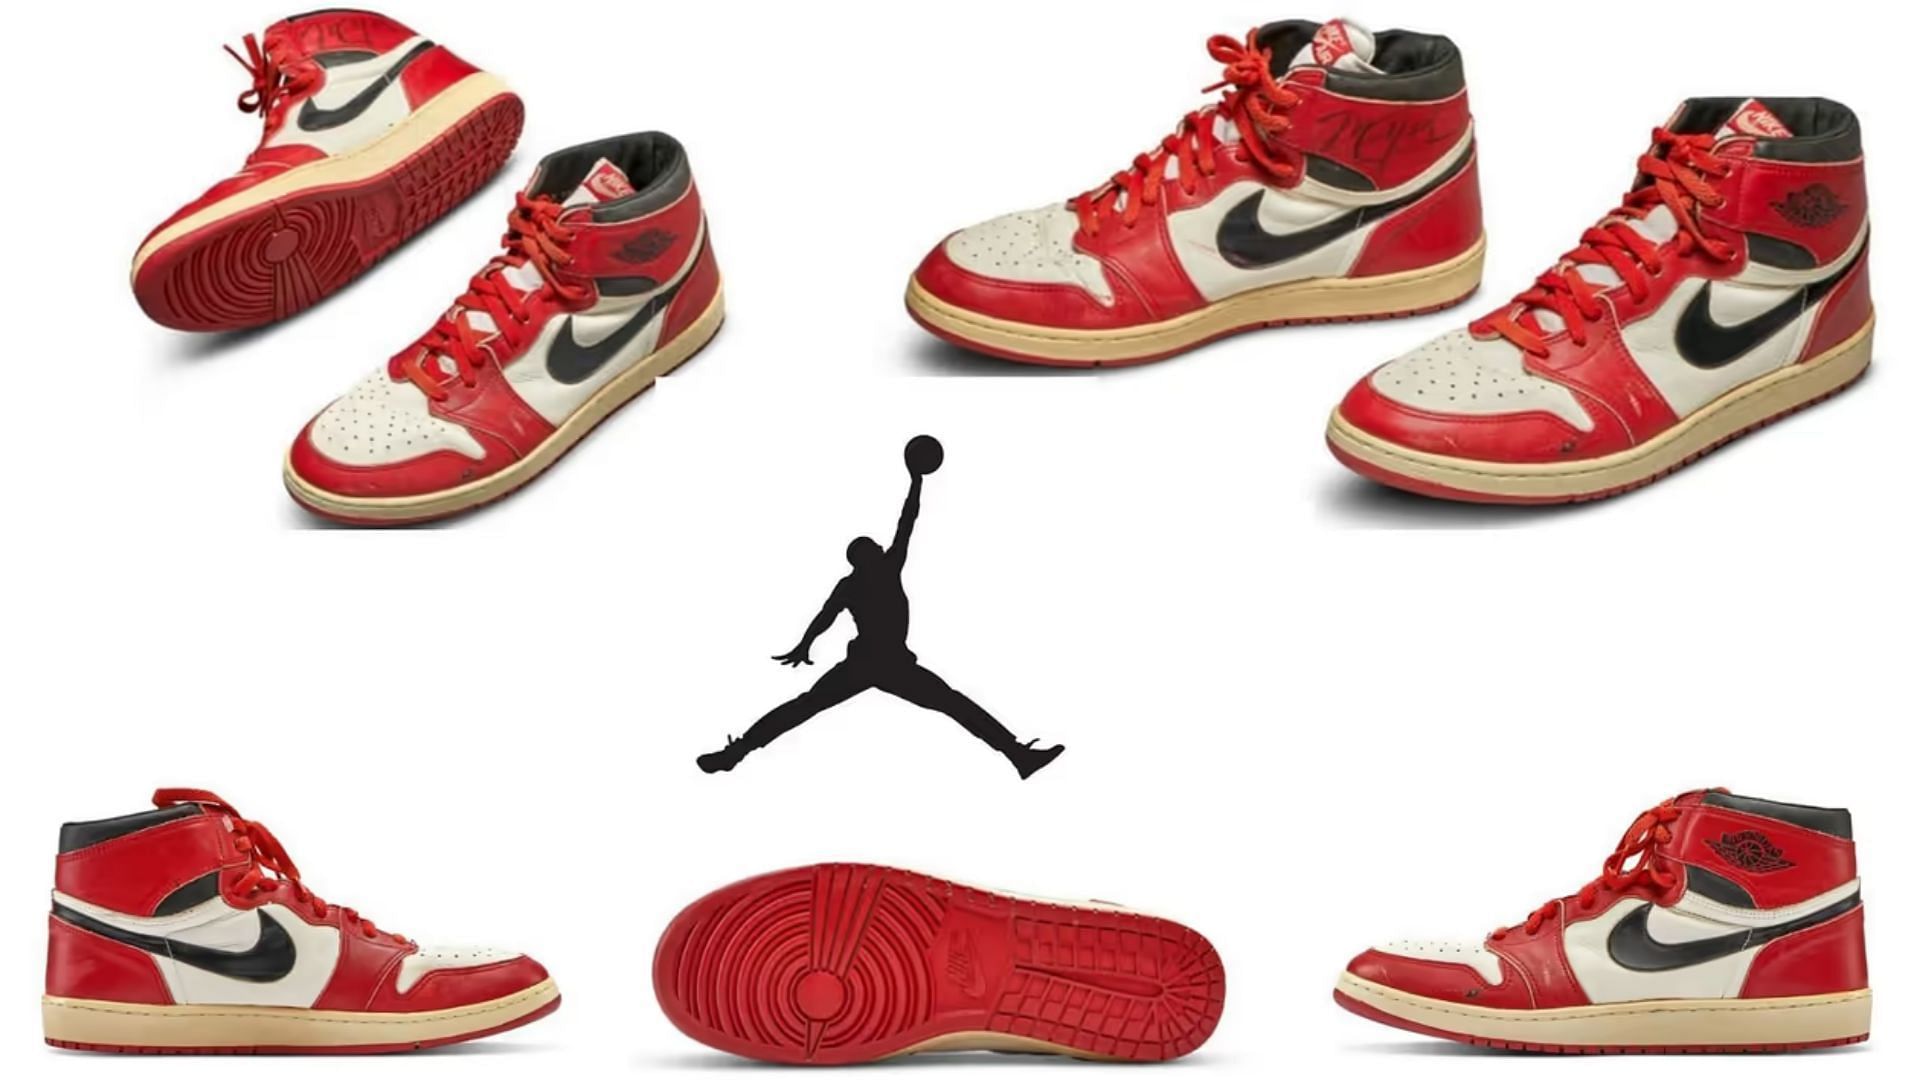 Nike Air Jordan 1 Chicago (1985) (Image via Sportskeeda)